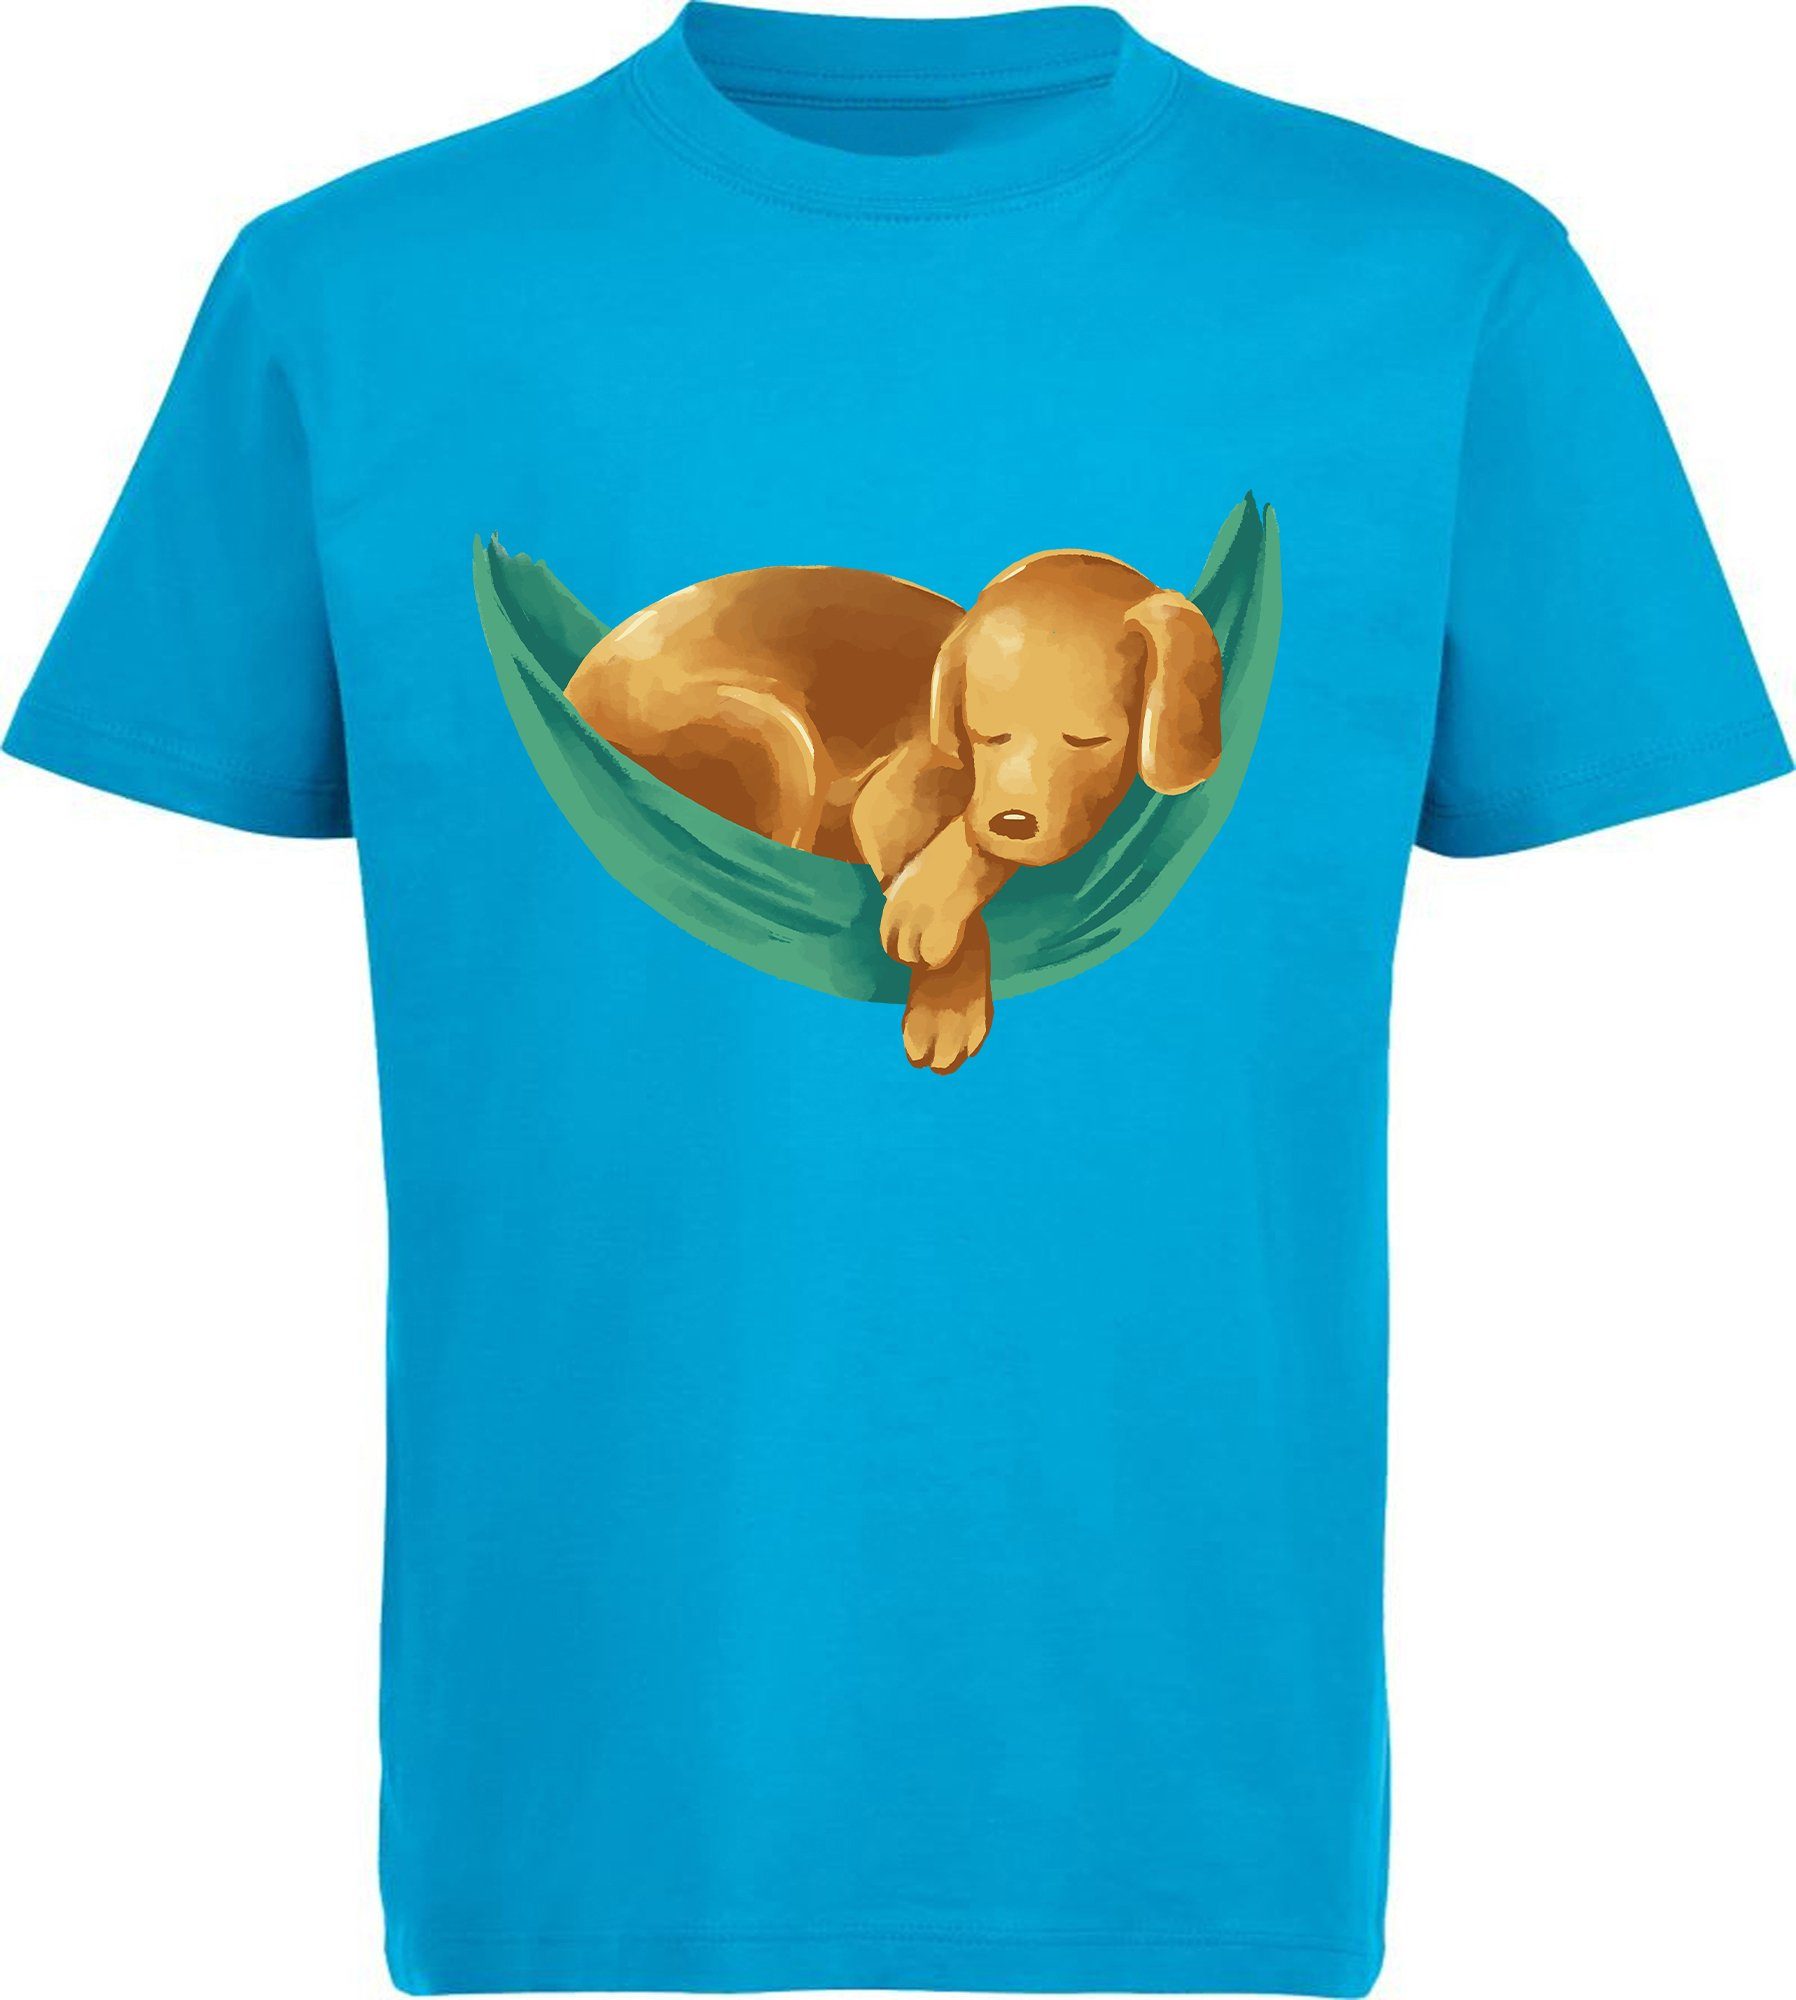 MyDesign24 T-Shirt Kinder Hunde Hängematte Baumwollshirt aqua Labrador Aufdruck, - Print mit Shirt Welpe in blau i245 bedruckt